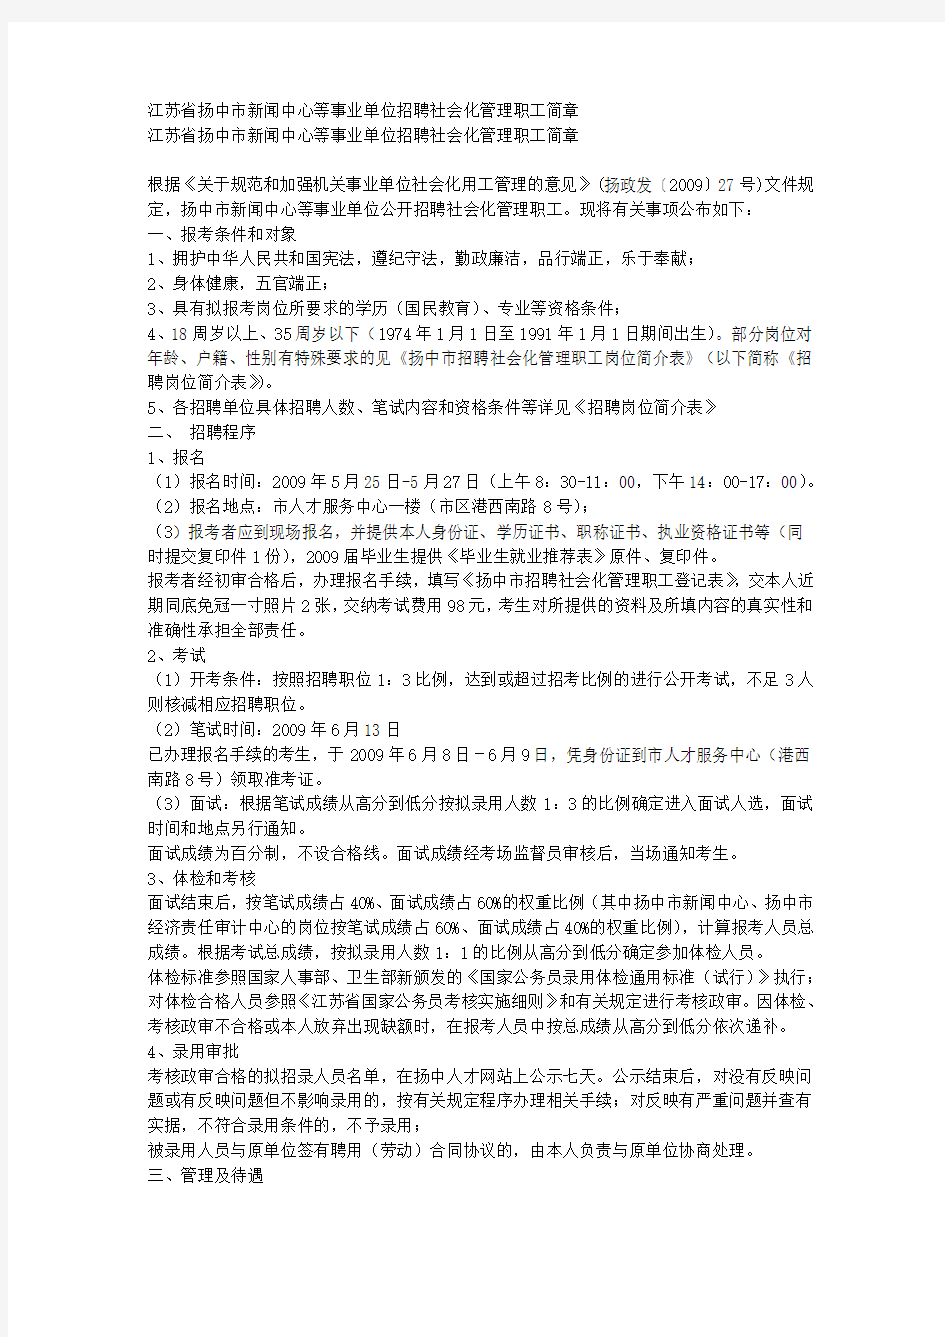 江苏省扬中市新闻中心等事业单位招聘社会化管理职工简章 